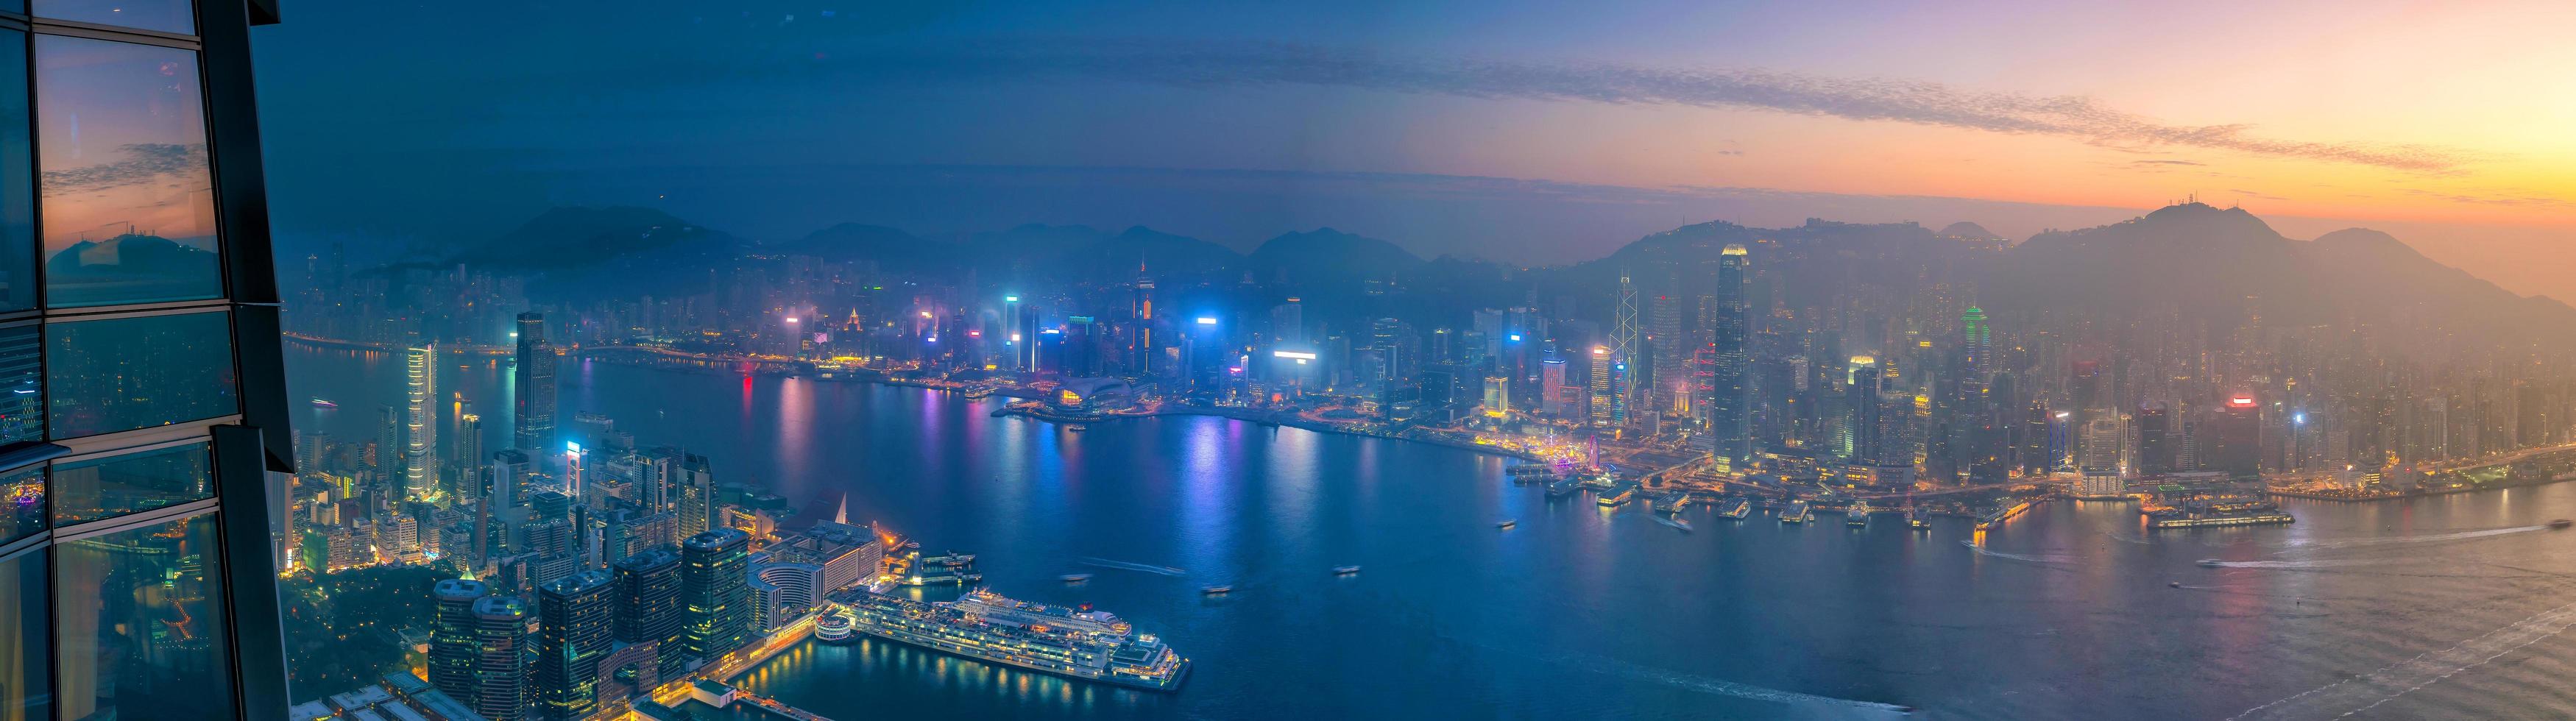 horizonte de la ciudad de hong kong con vista al puerto de victoria foto